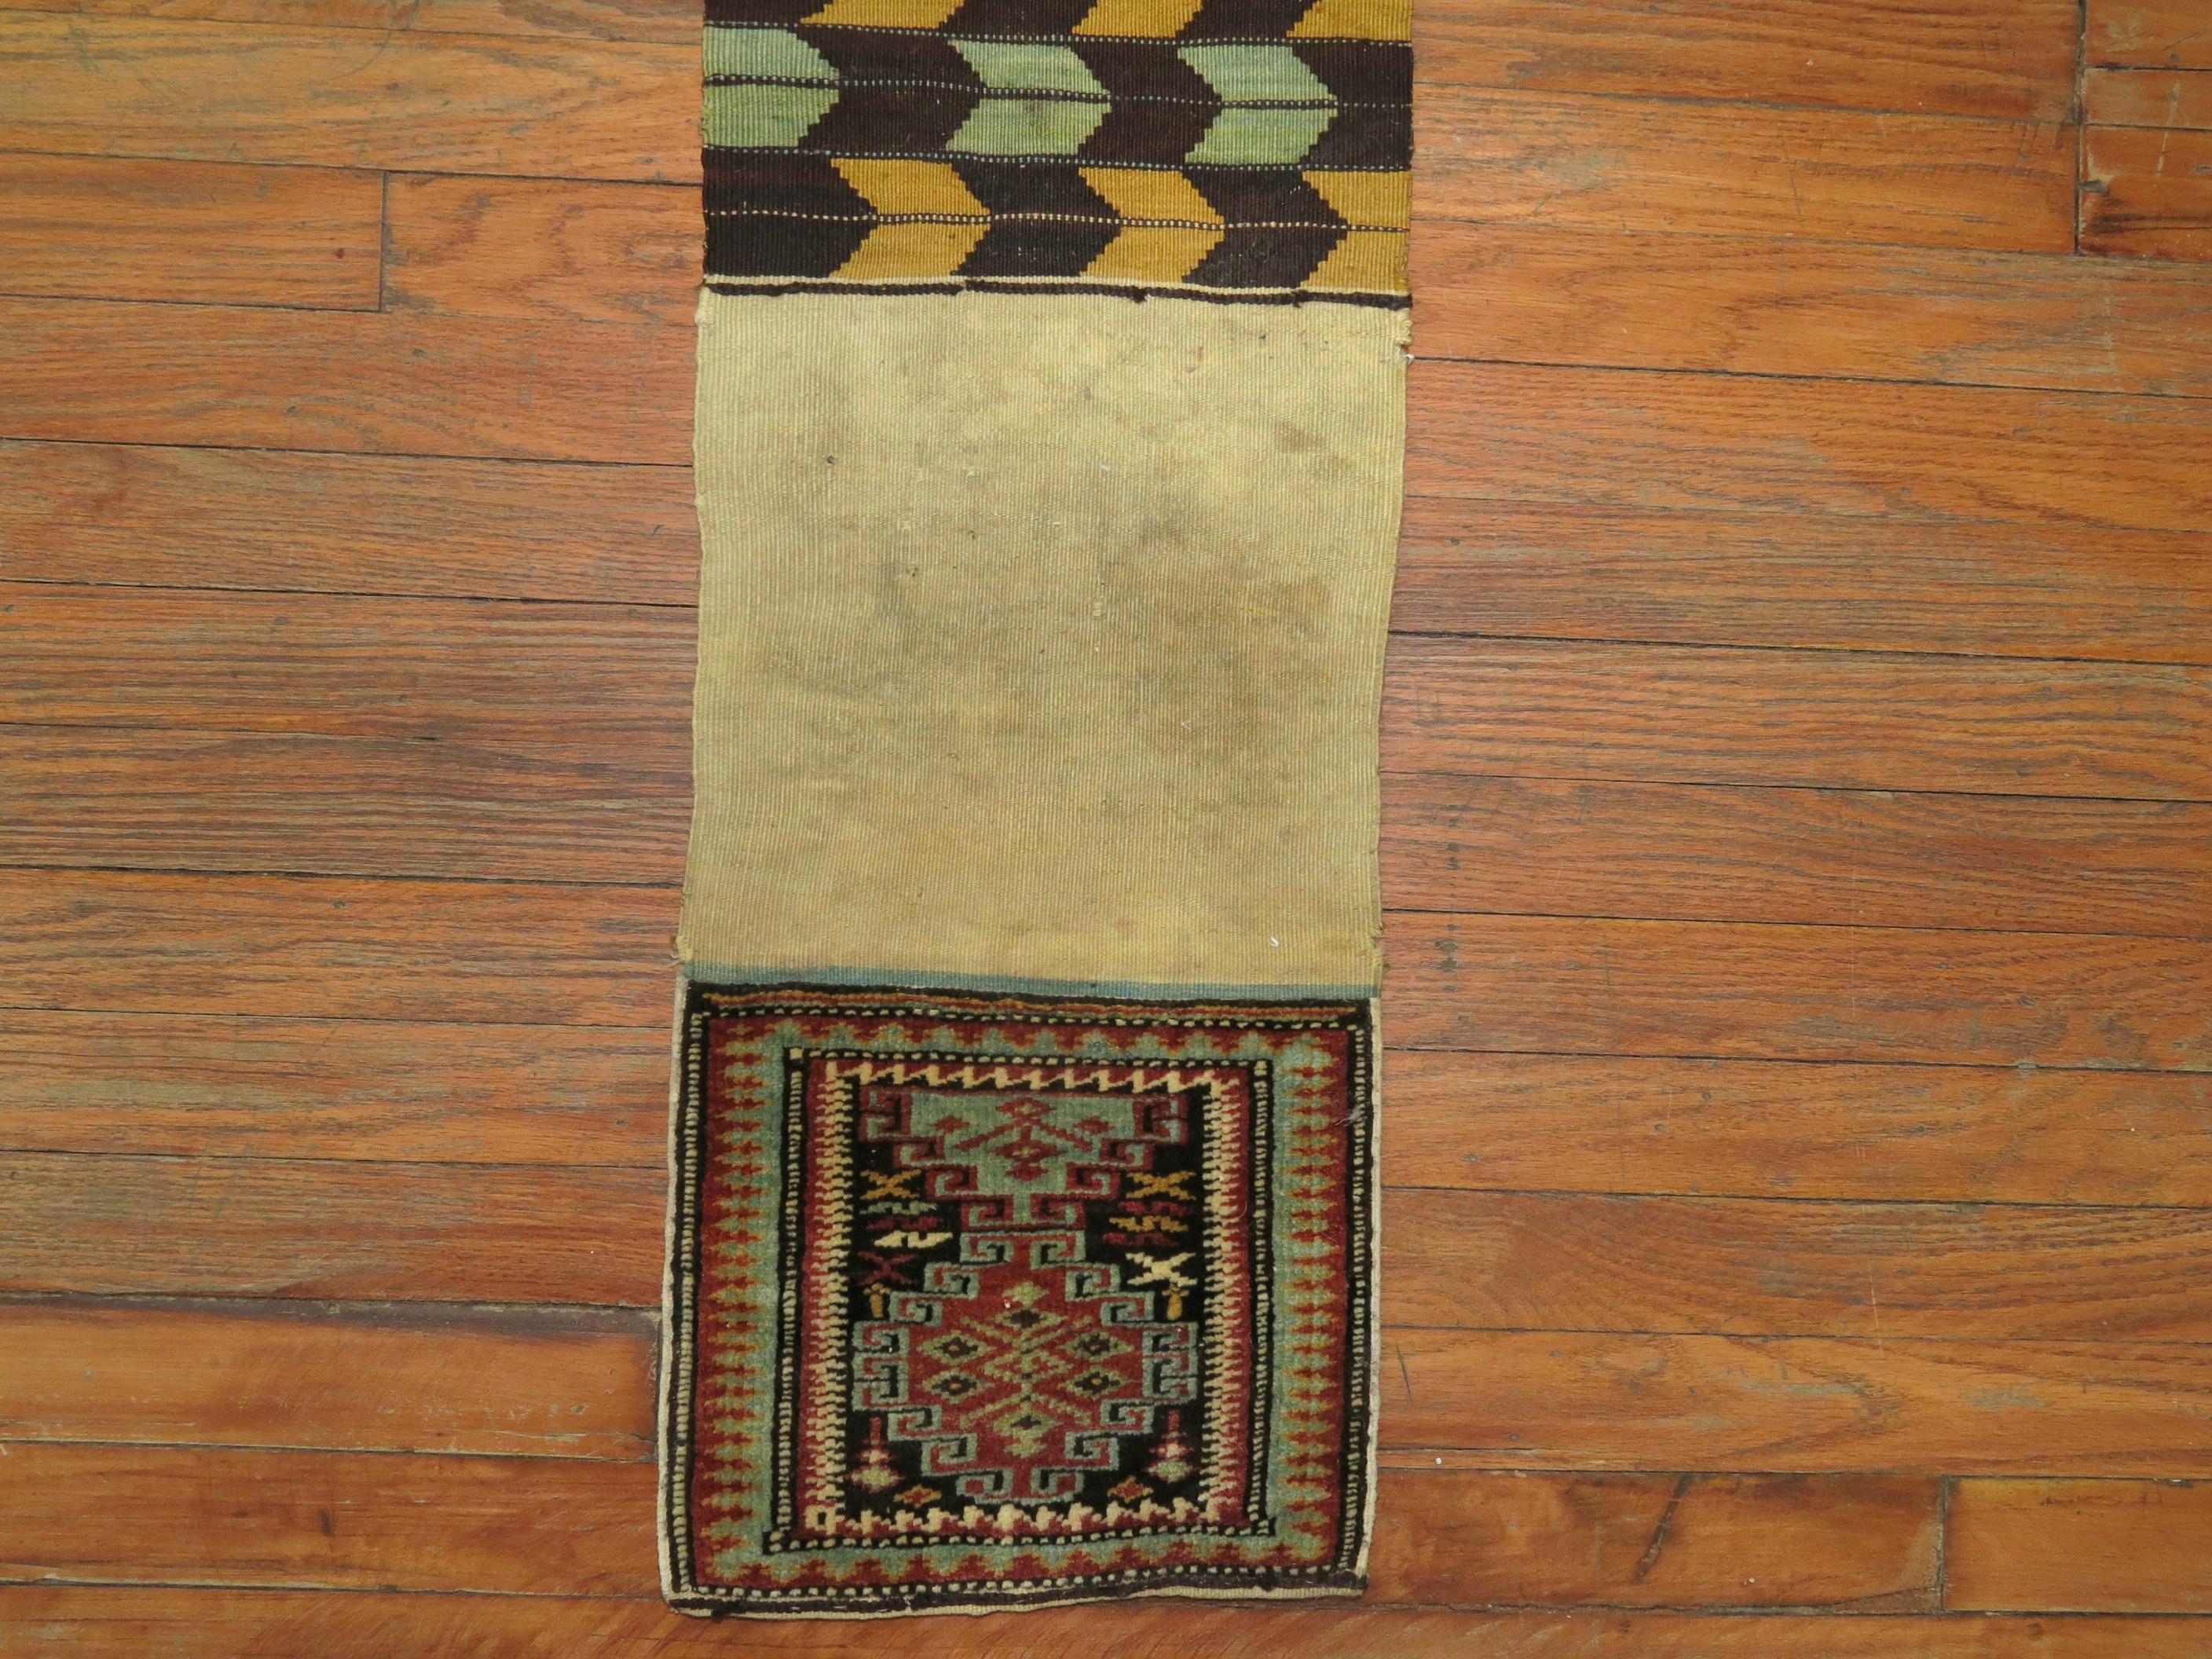 Ein Bagface-Stammesteppich aus dem 19. Jahrhundert. 

Maße: 12'' x 50''.